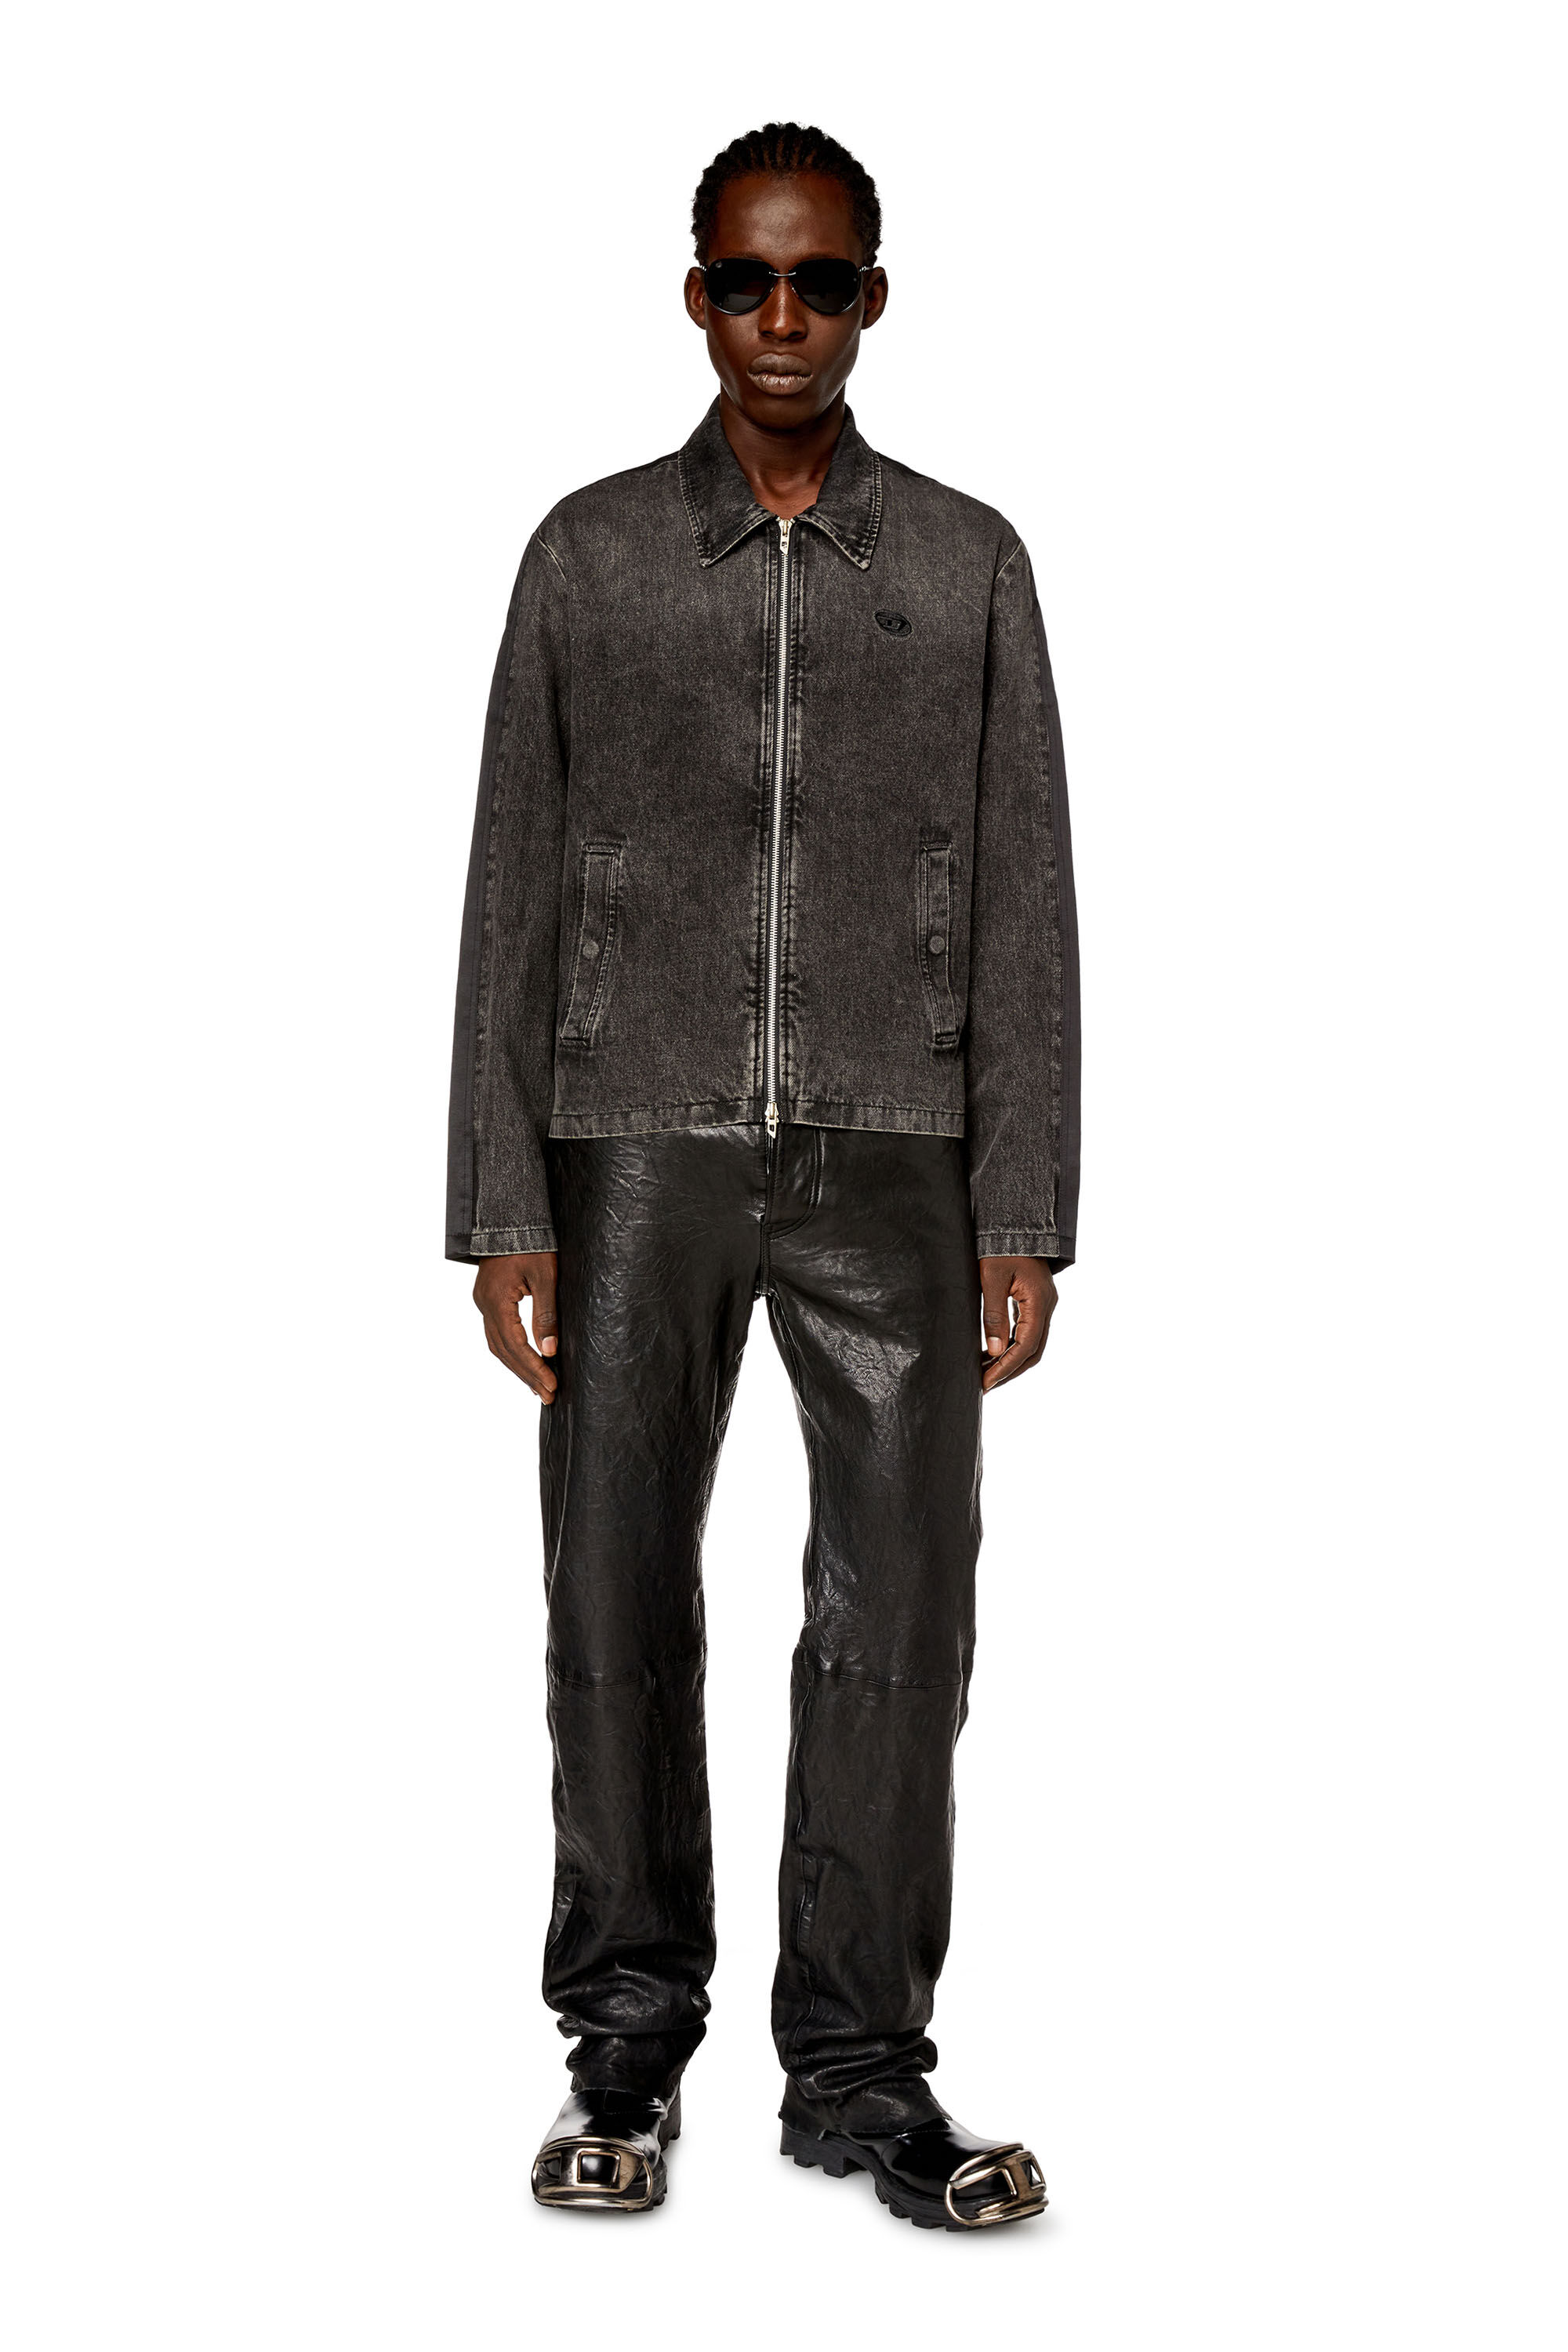 Diesel - J-HARRIS, Man Hybrid jacket in denim and twill in Black - Image 1